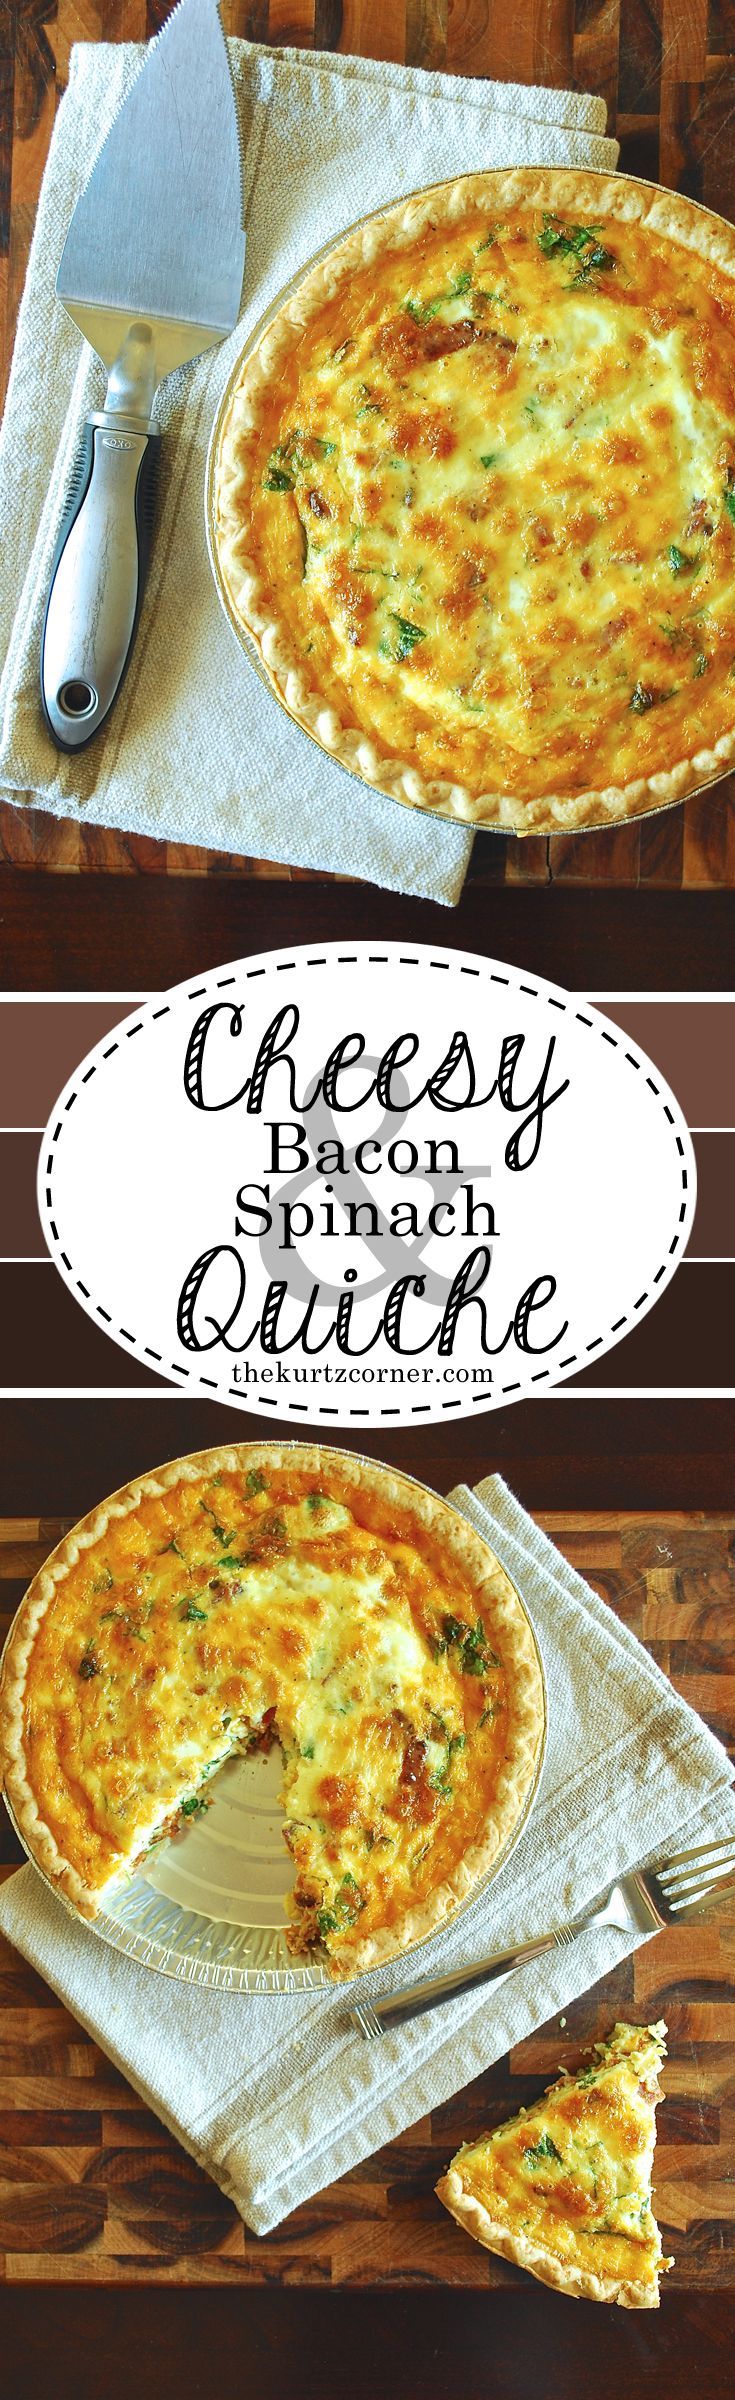 Cheesy Bacon & Spinach Quiche